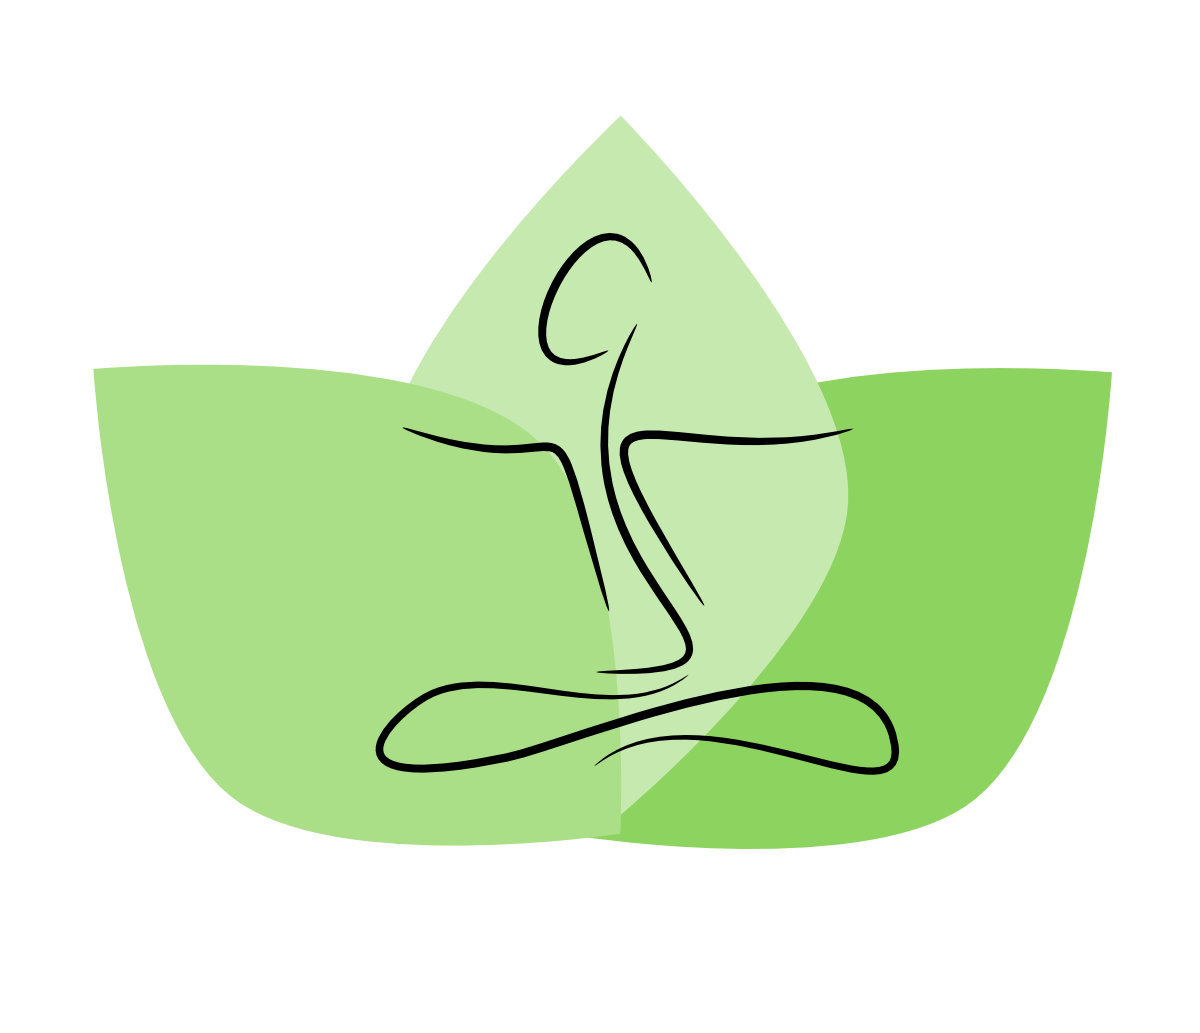 Ein grünes Logo mit einer stilisierten Person und Blättern, die Wohlbefinden oder Yoga symbolisieren könnten.